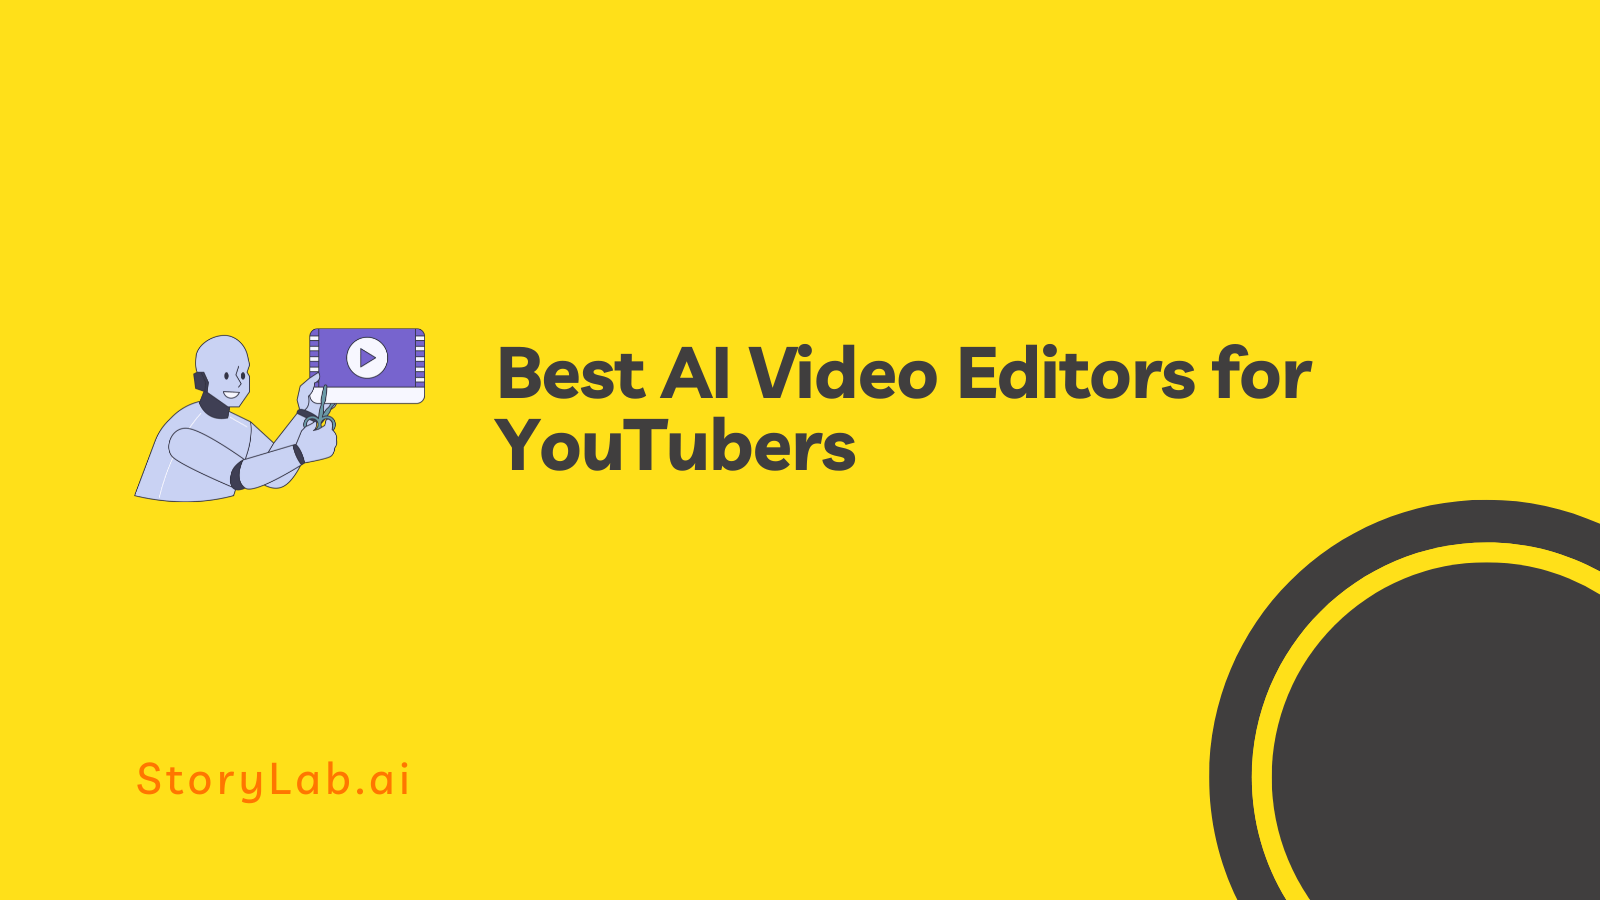 I migliori editor video AI per YouTuber